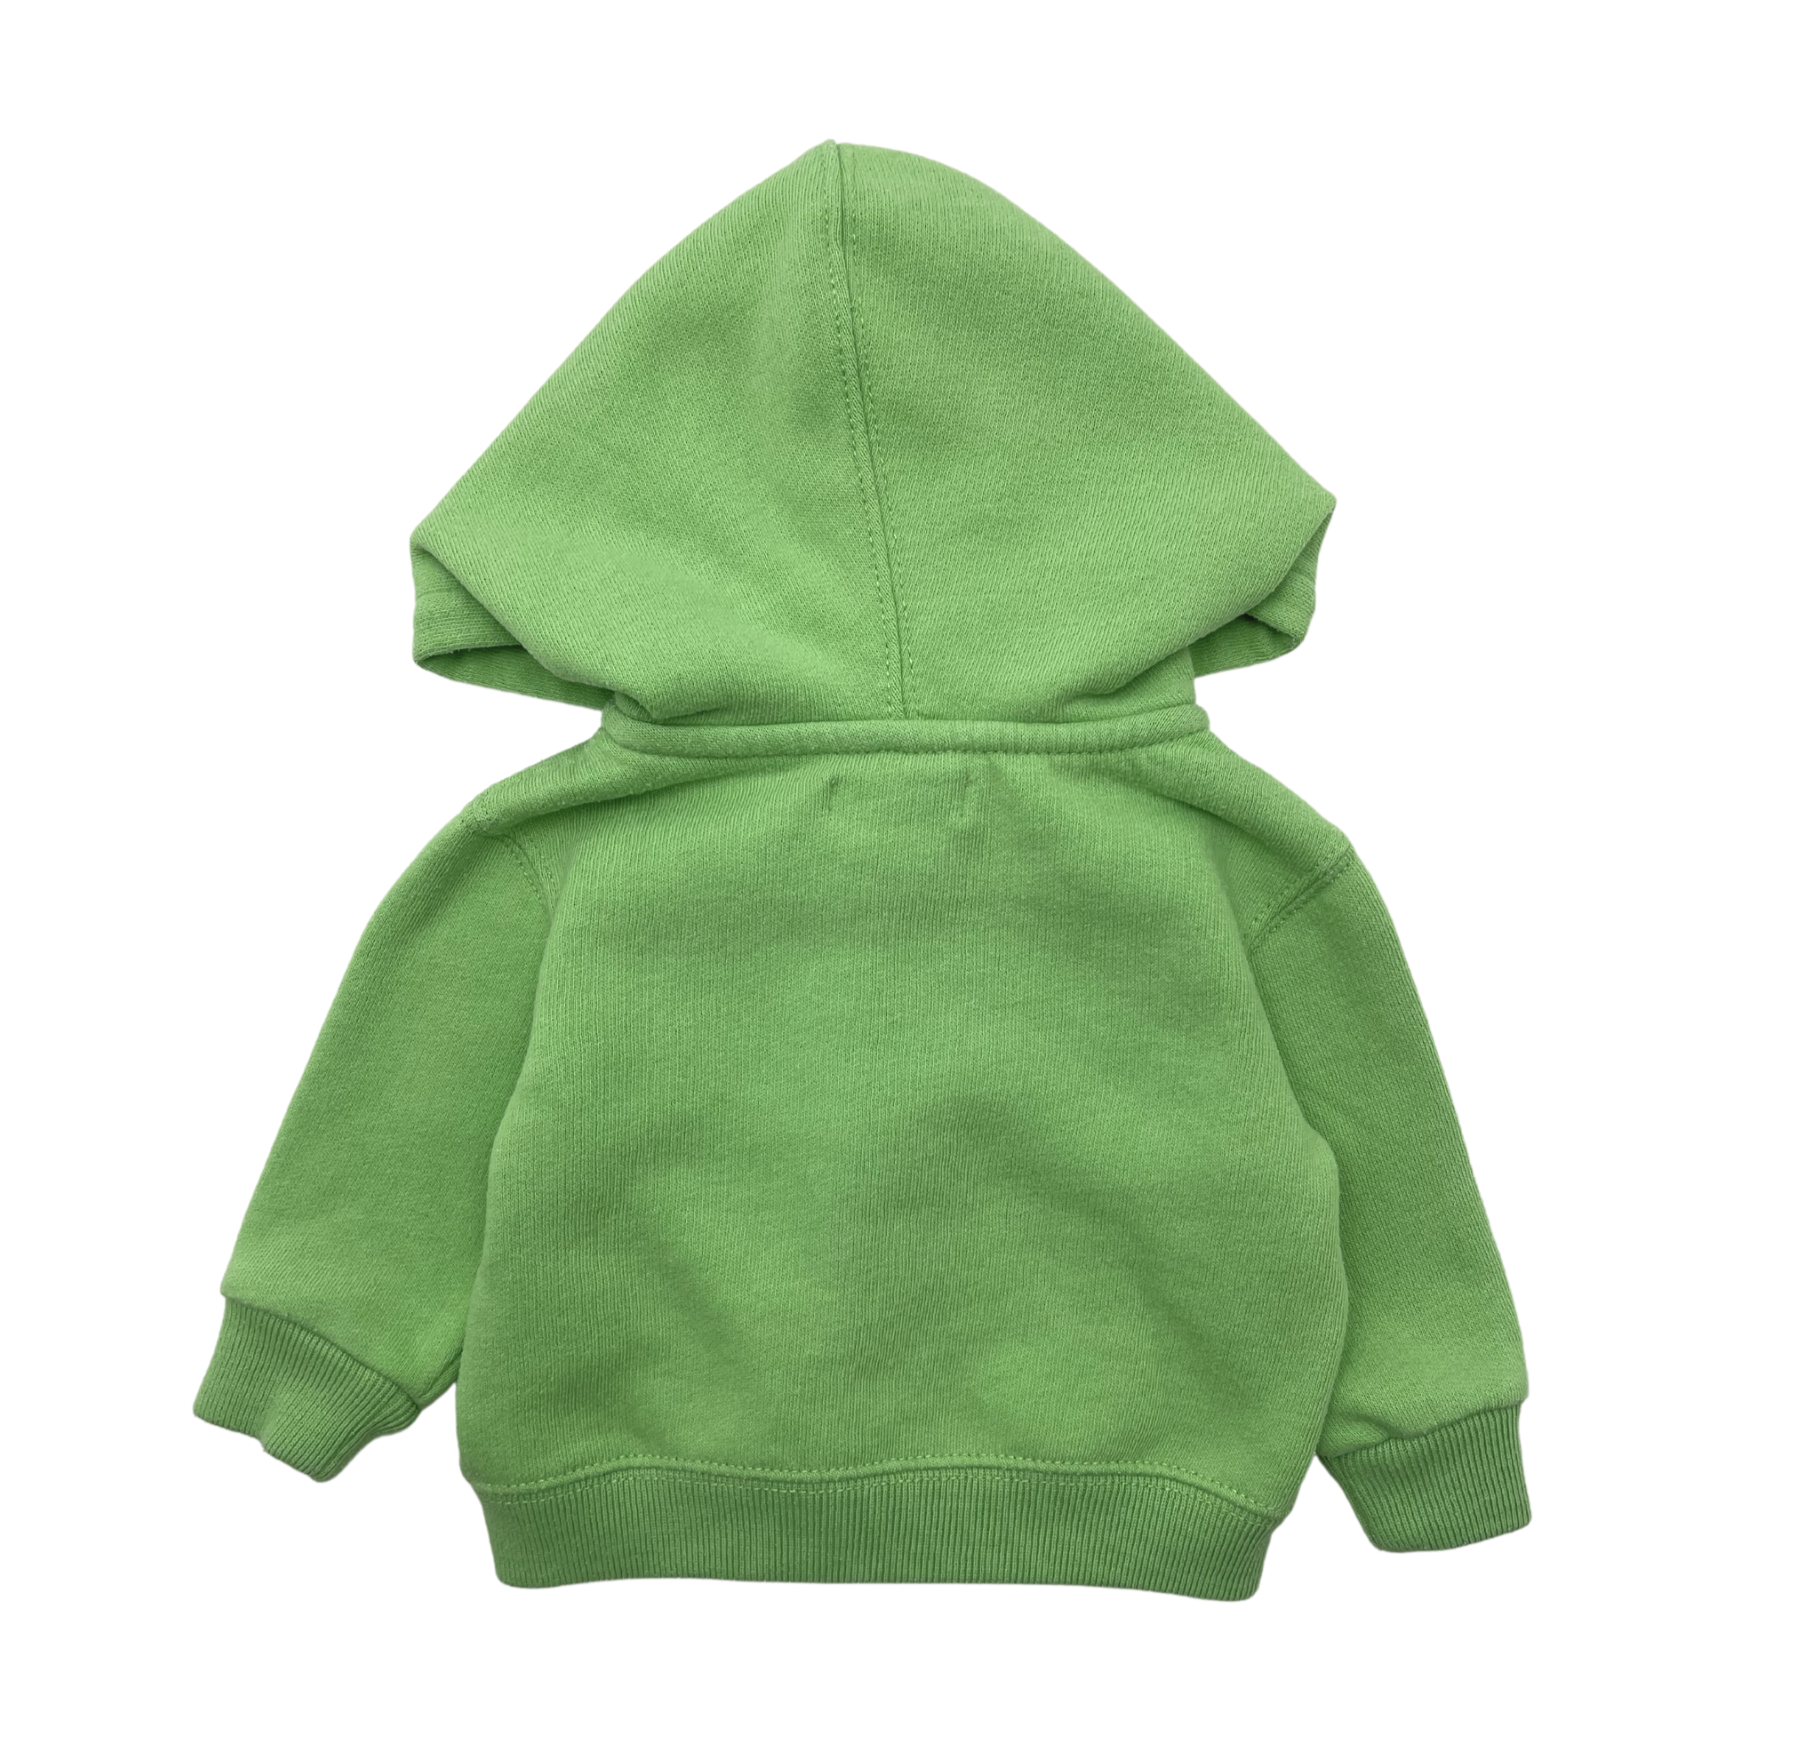 RALPH LAUREN - Apple green sweatshirt - 3 months